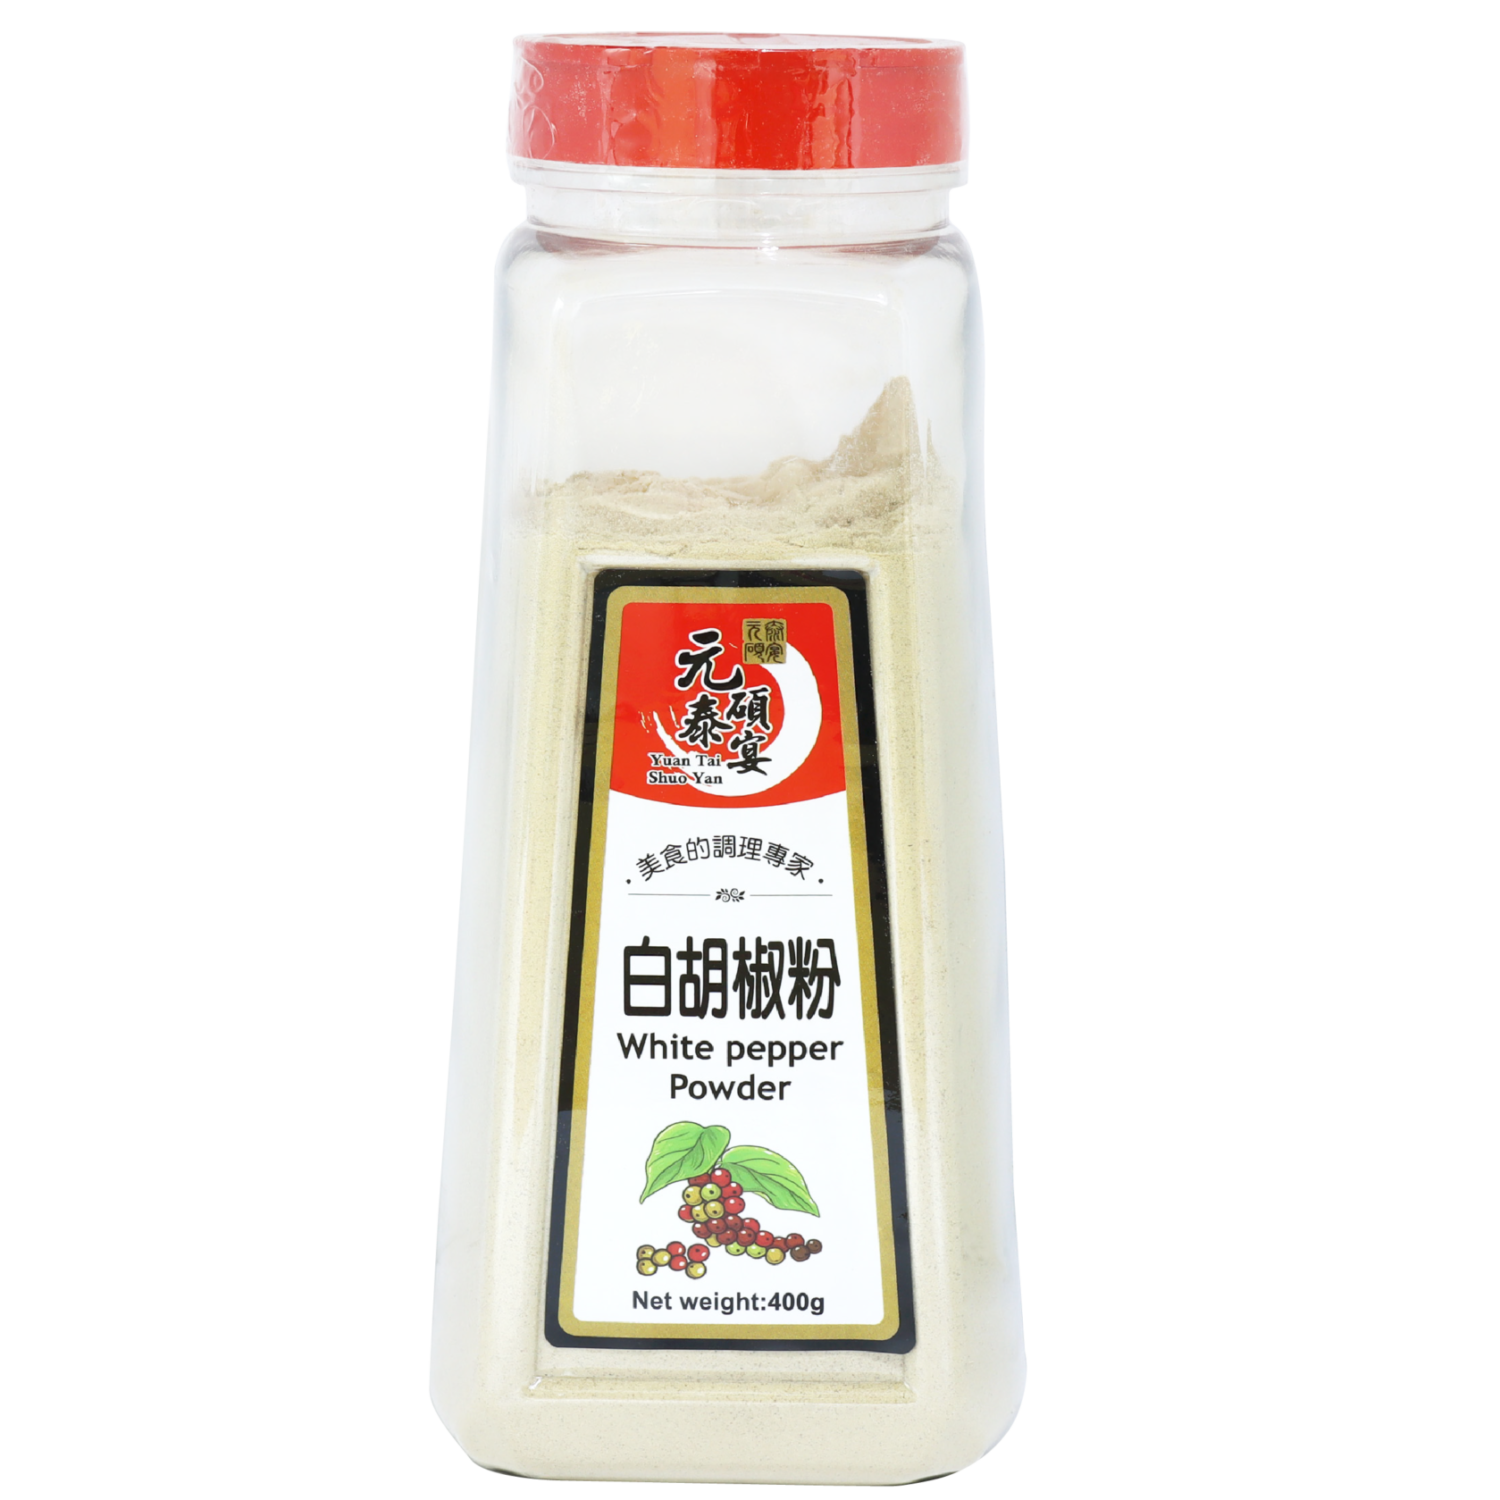 公平貿易白胡椒粉(馥聚)-40g/包 - 台灣主婦聯盟生活消費合作社